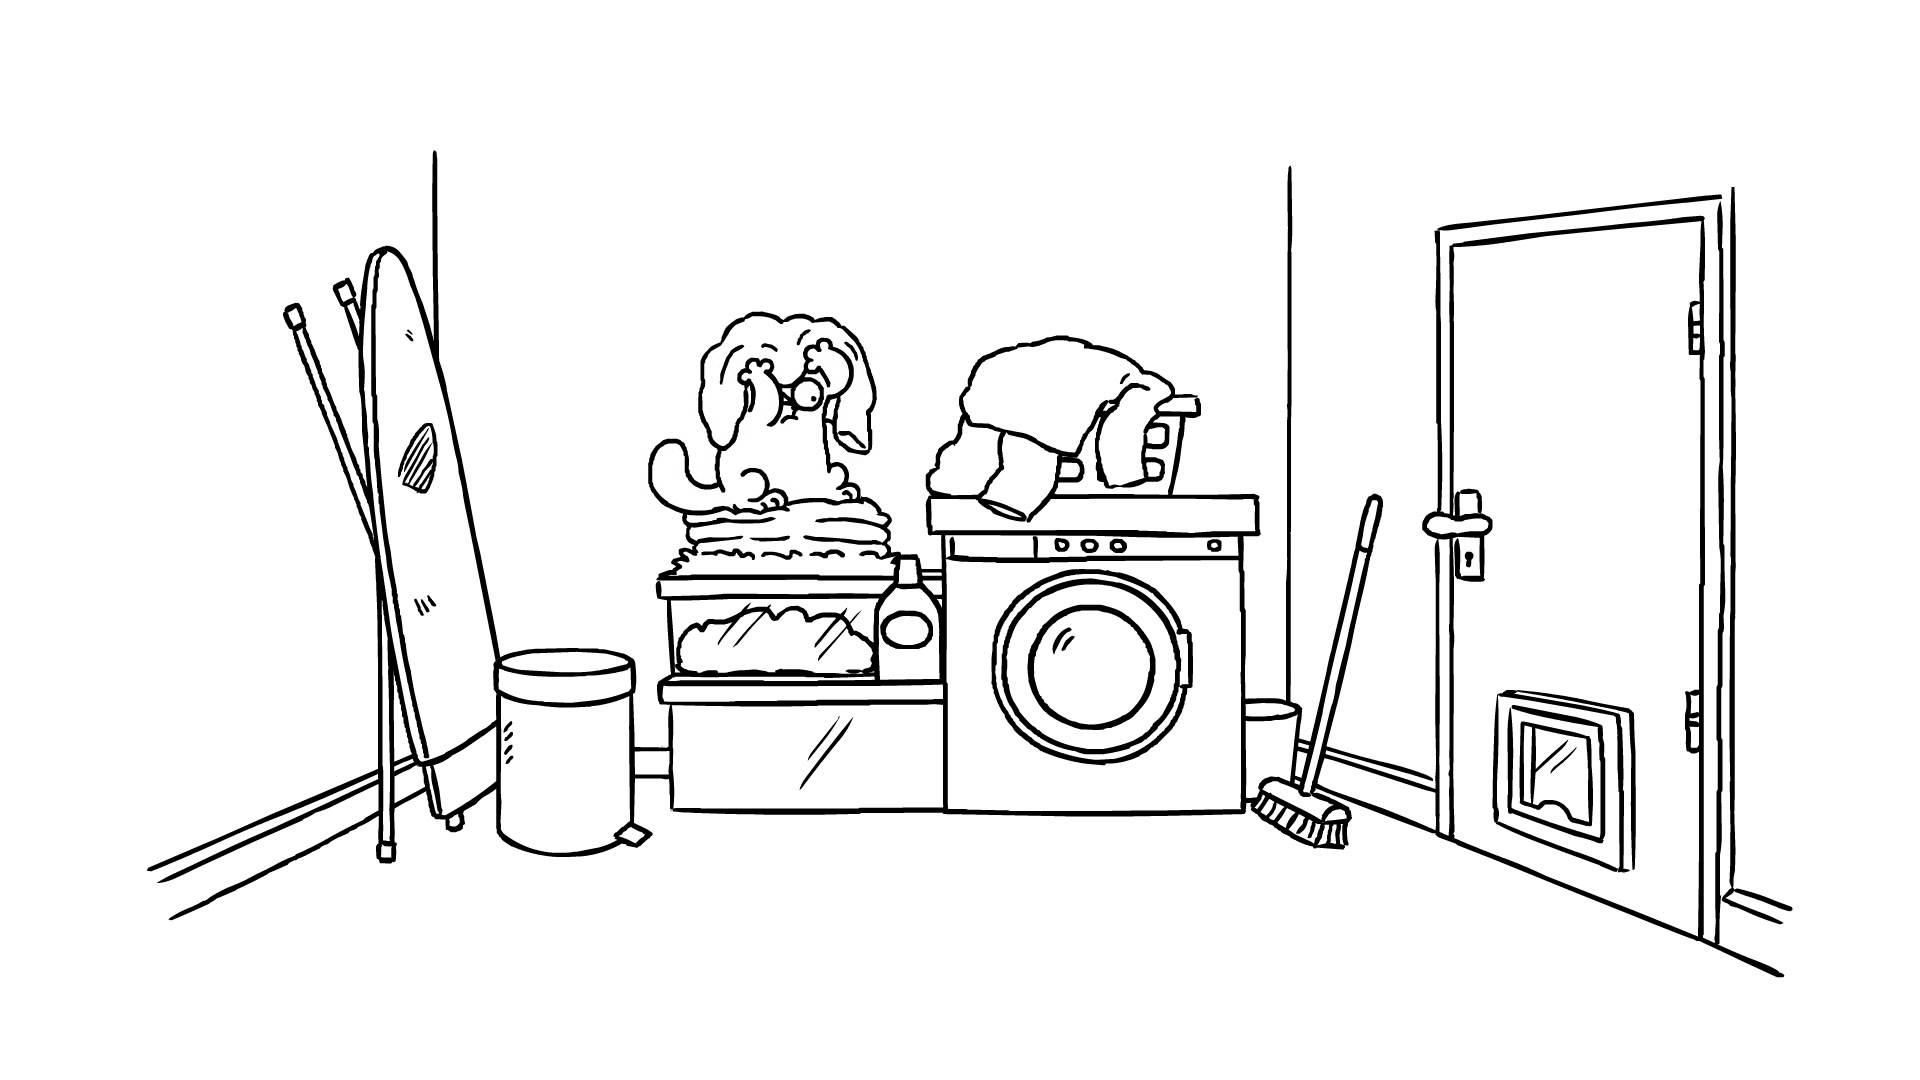 Simon's cat in the laundry room, Laundry room adventures, Feline vs. spider, Laundered comedy, 1920x1080 Full HD Desktop